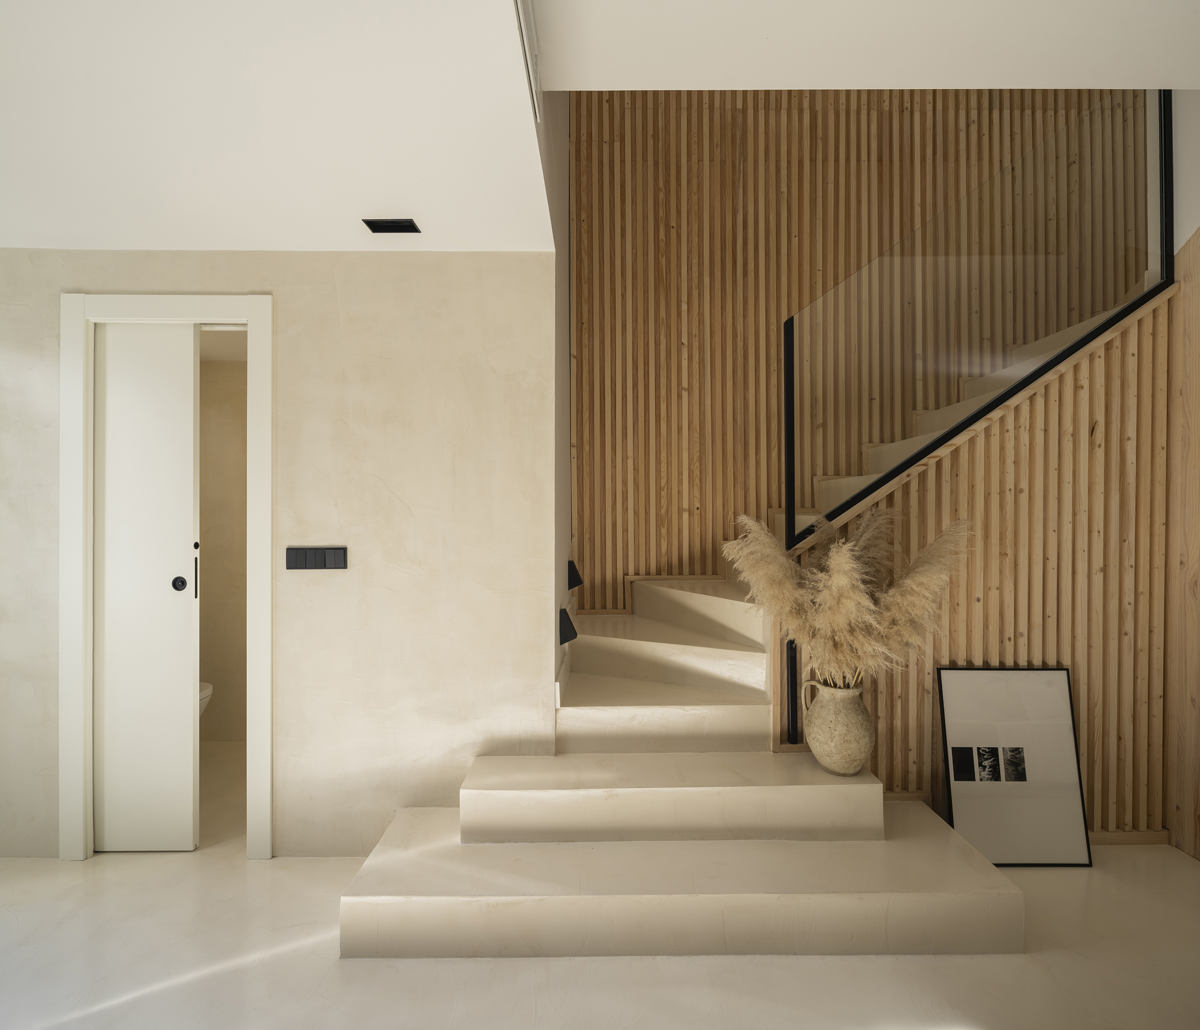 Mikrocement lépcsőkön, falakon és padlón a Jara projektben Granadában.